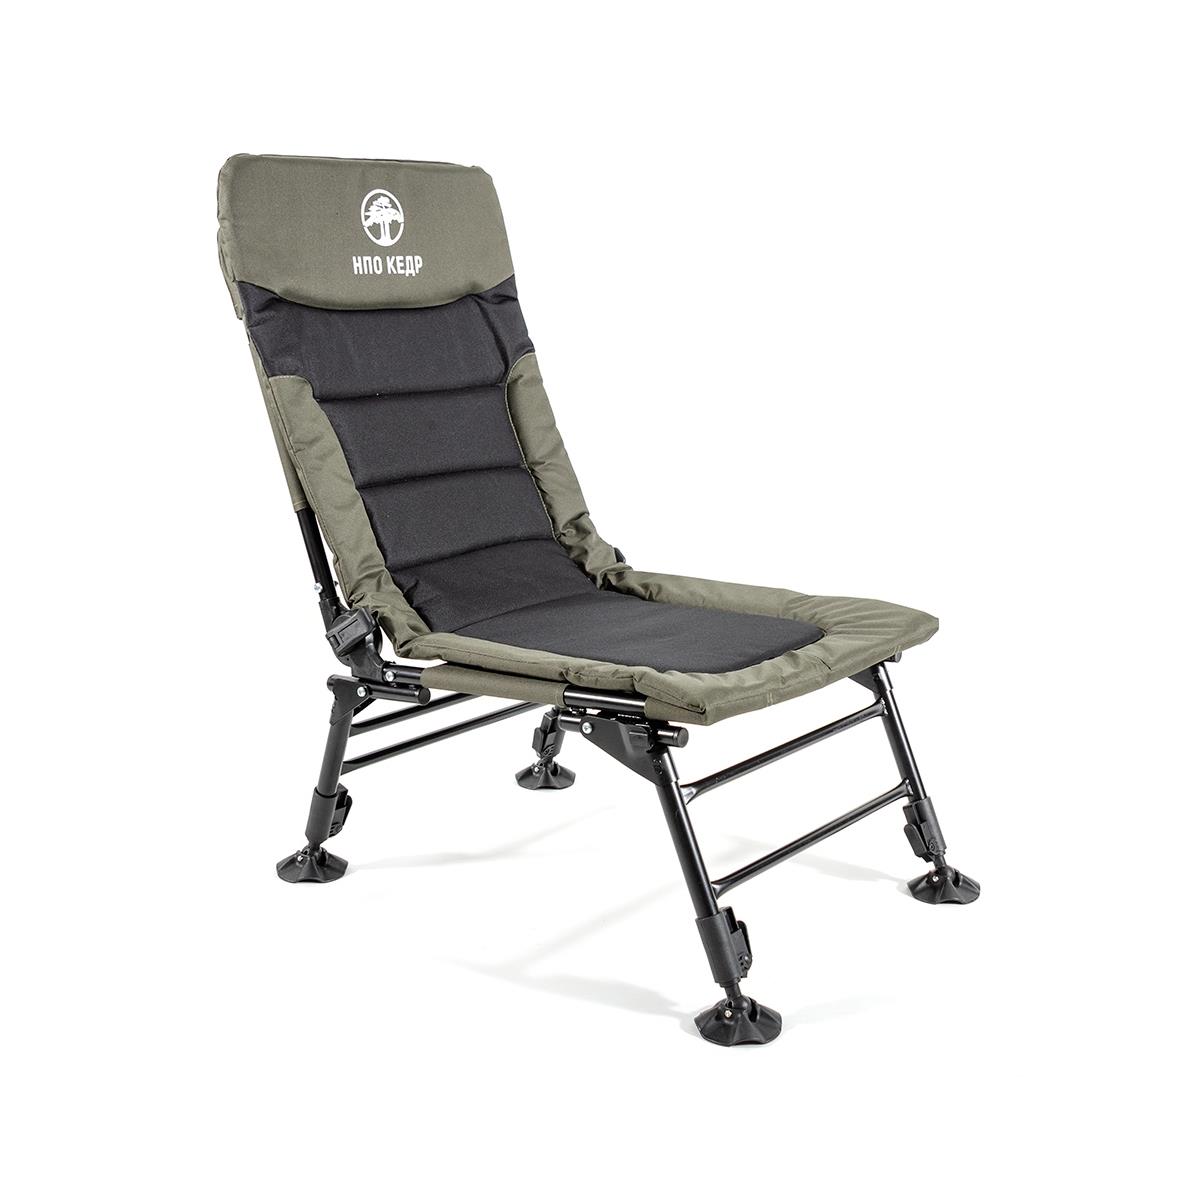 Кресло карповое без подлокотников (SKC-02)  Кедр бокорезы кедр